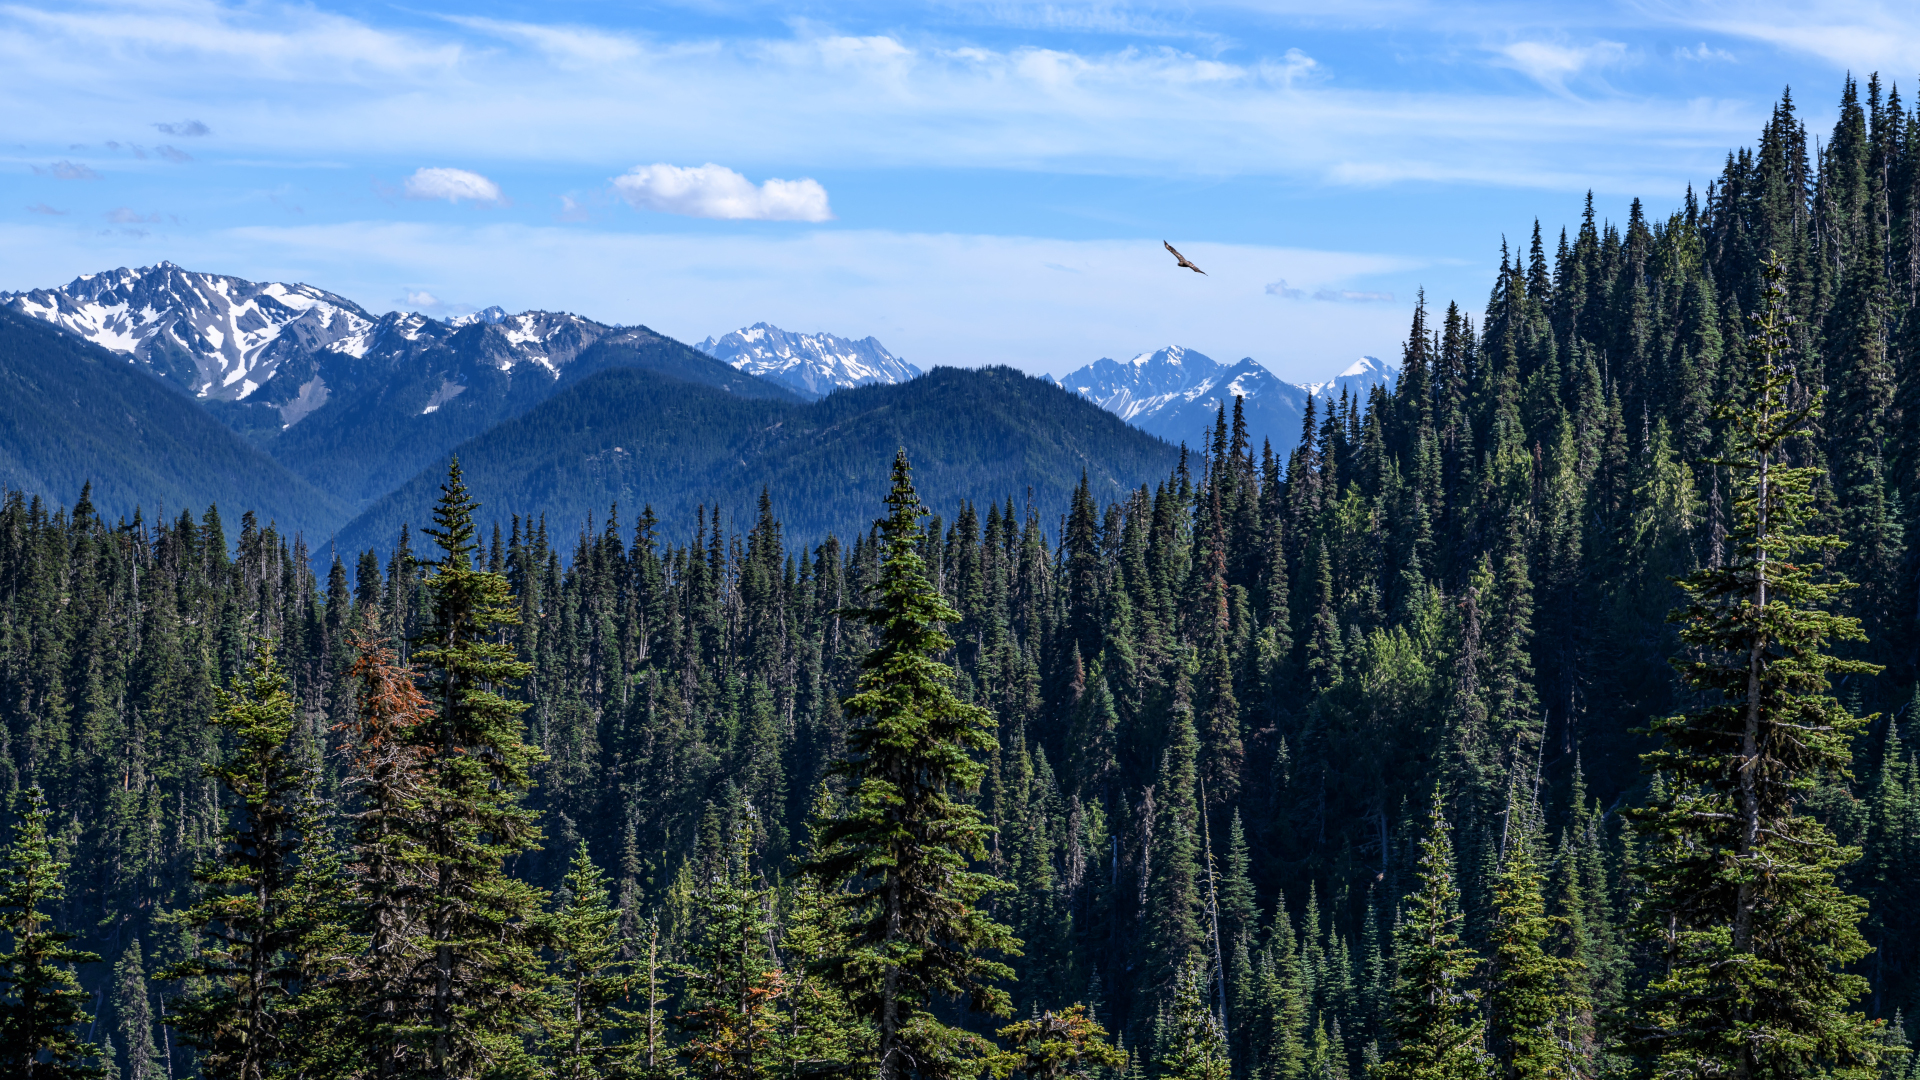 Las montañas del Parque Nacional Olympic en el fondo con bosques de pinos en primer plano